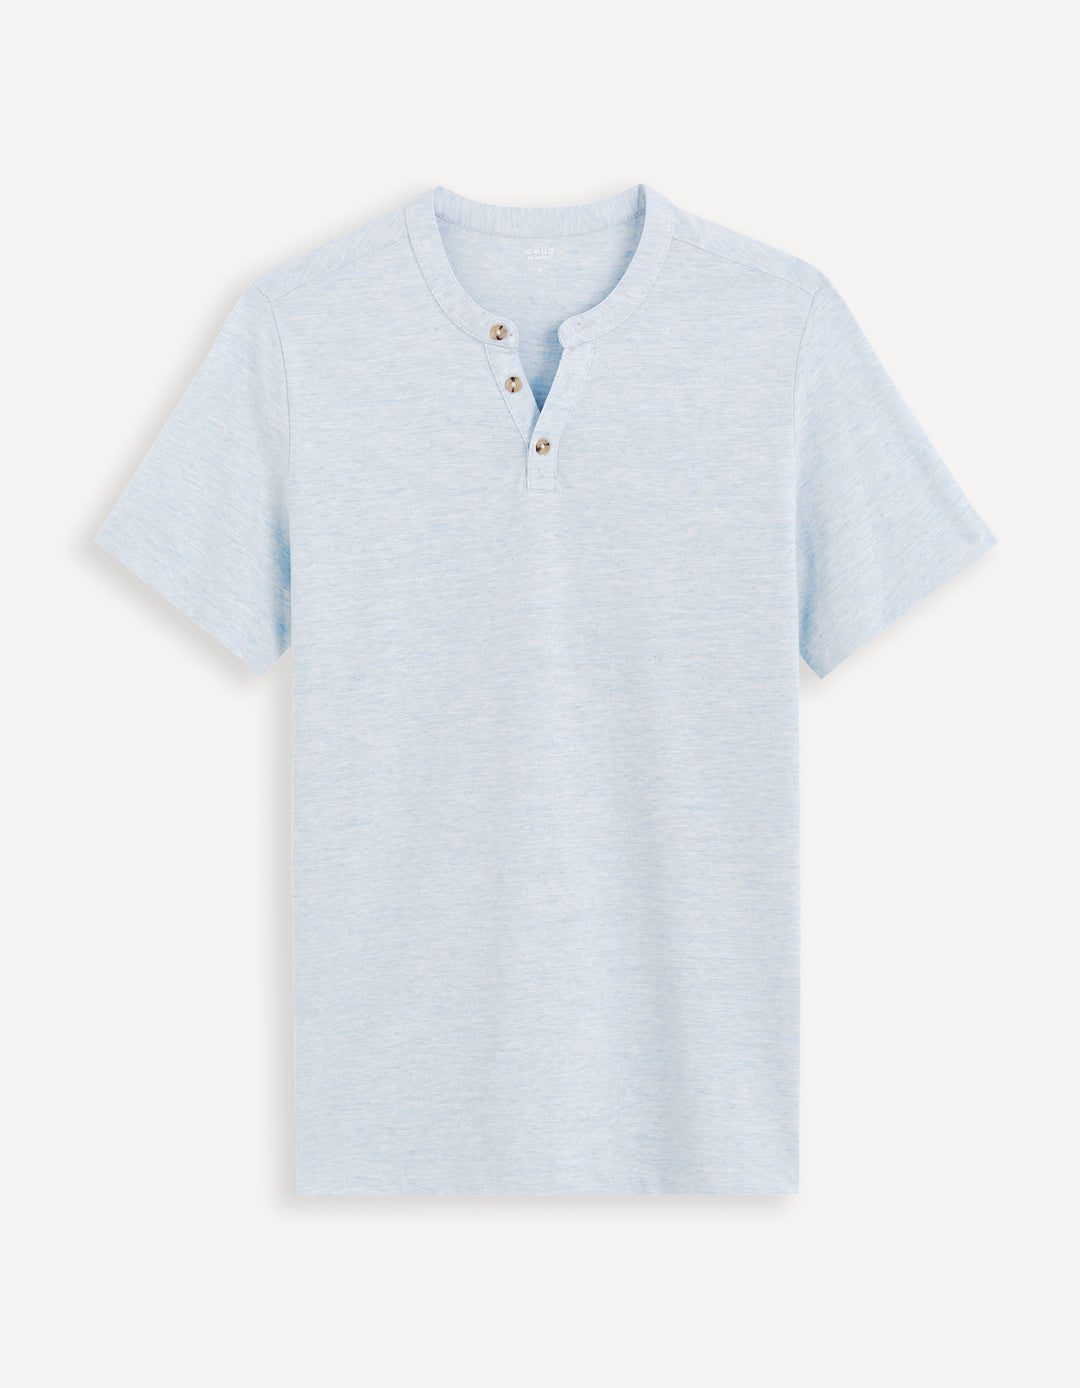 Men - Knitted - T-Shirt - Short sleeves - Henley collar